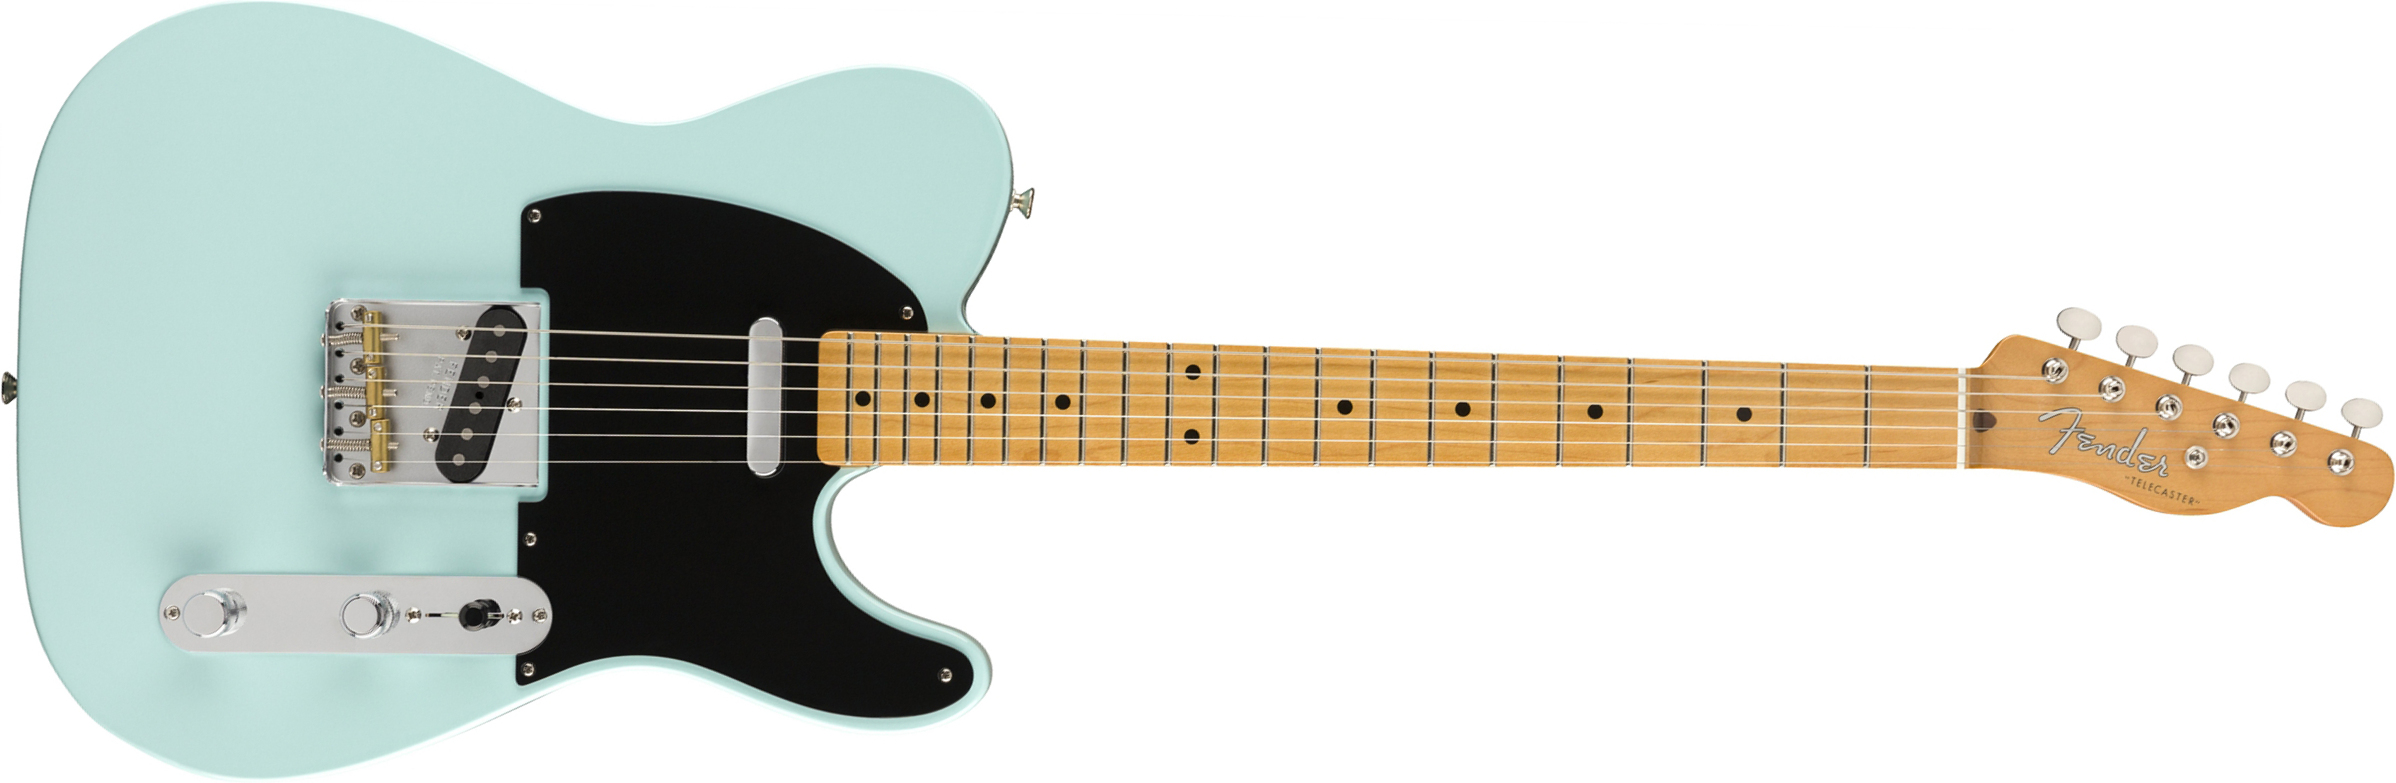 Fender Tele 50s Vintera Modified Mex Mn - Daphne Blue - E-Gitarre in Teleform - Main picture